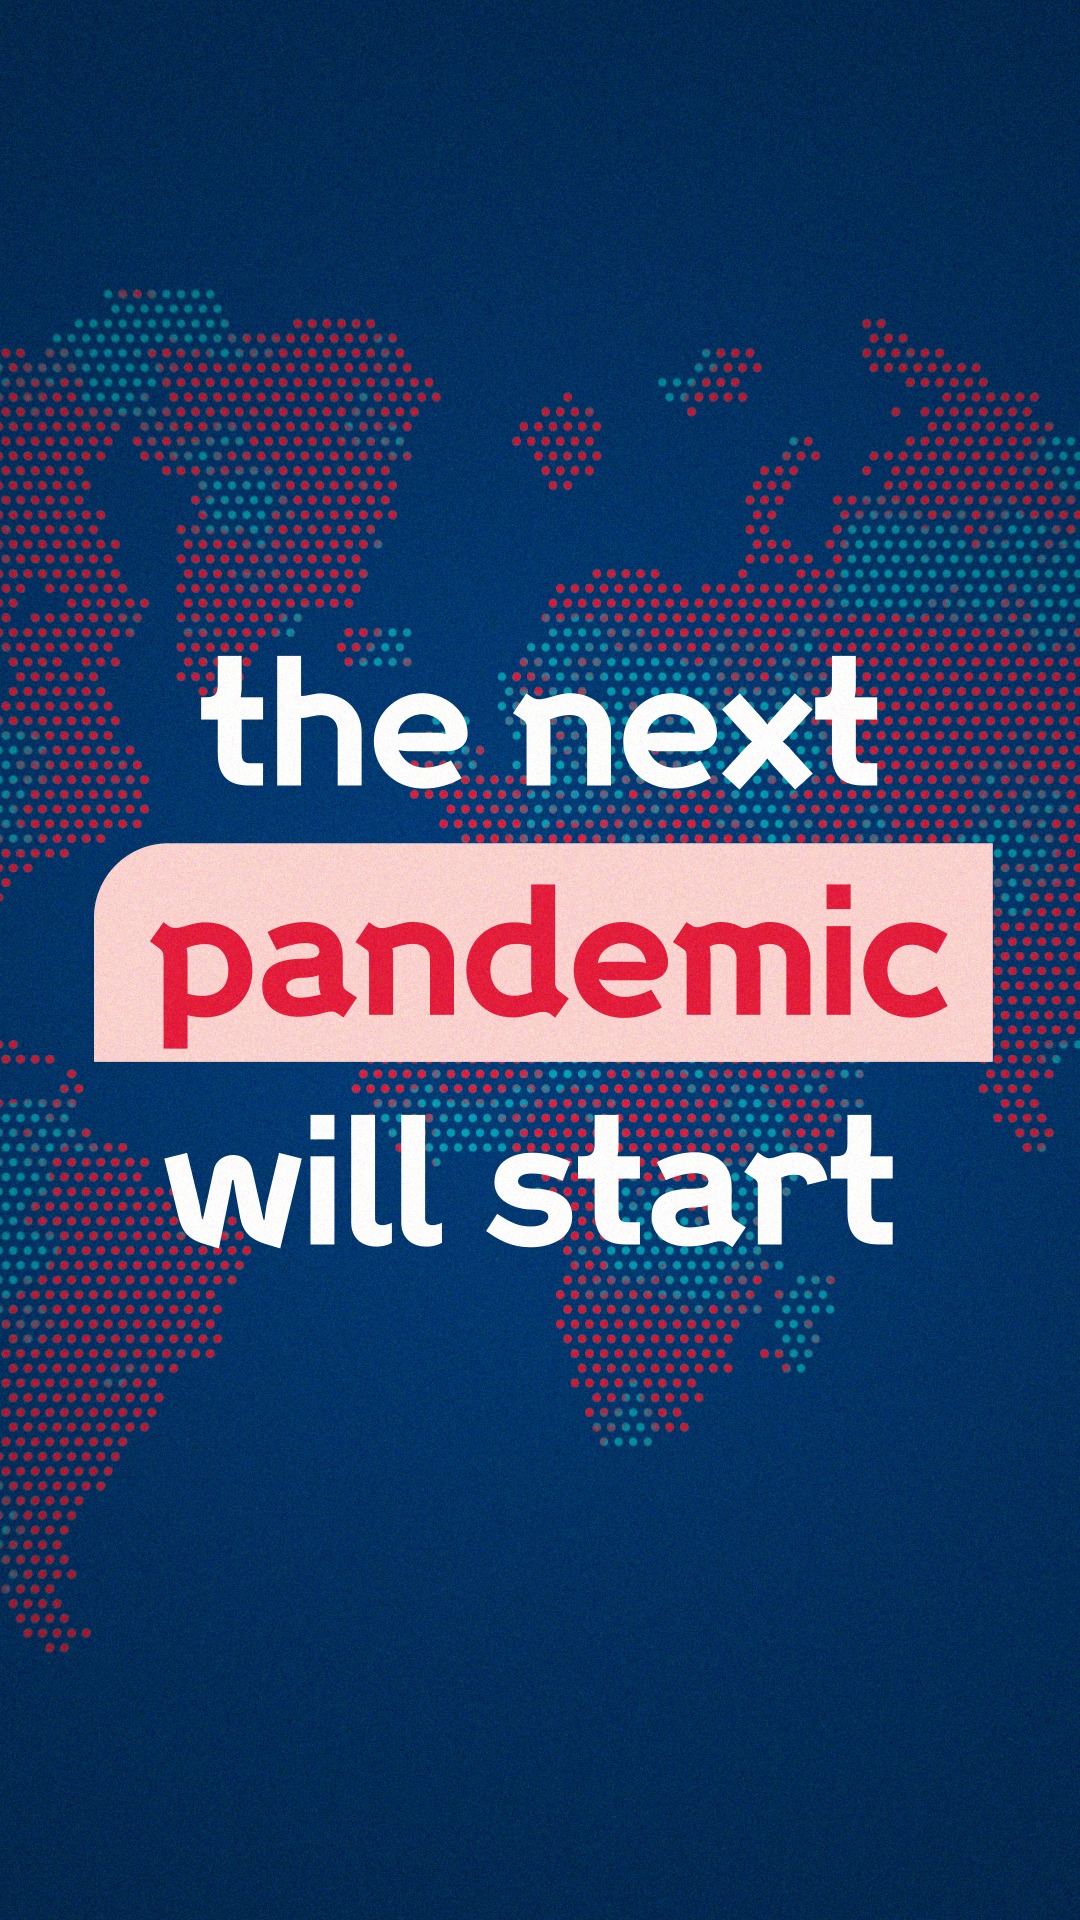 03_Pandemic_9x16_00008